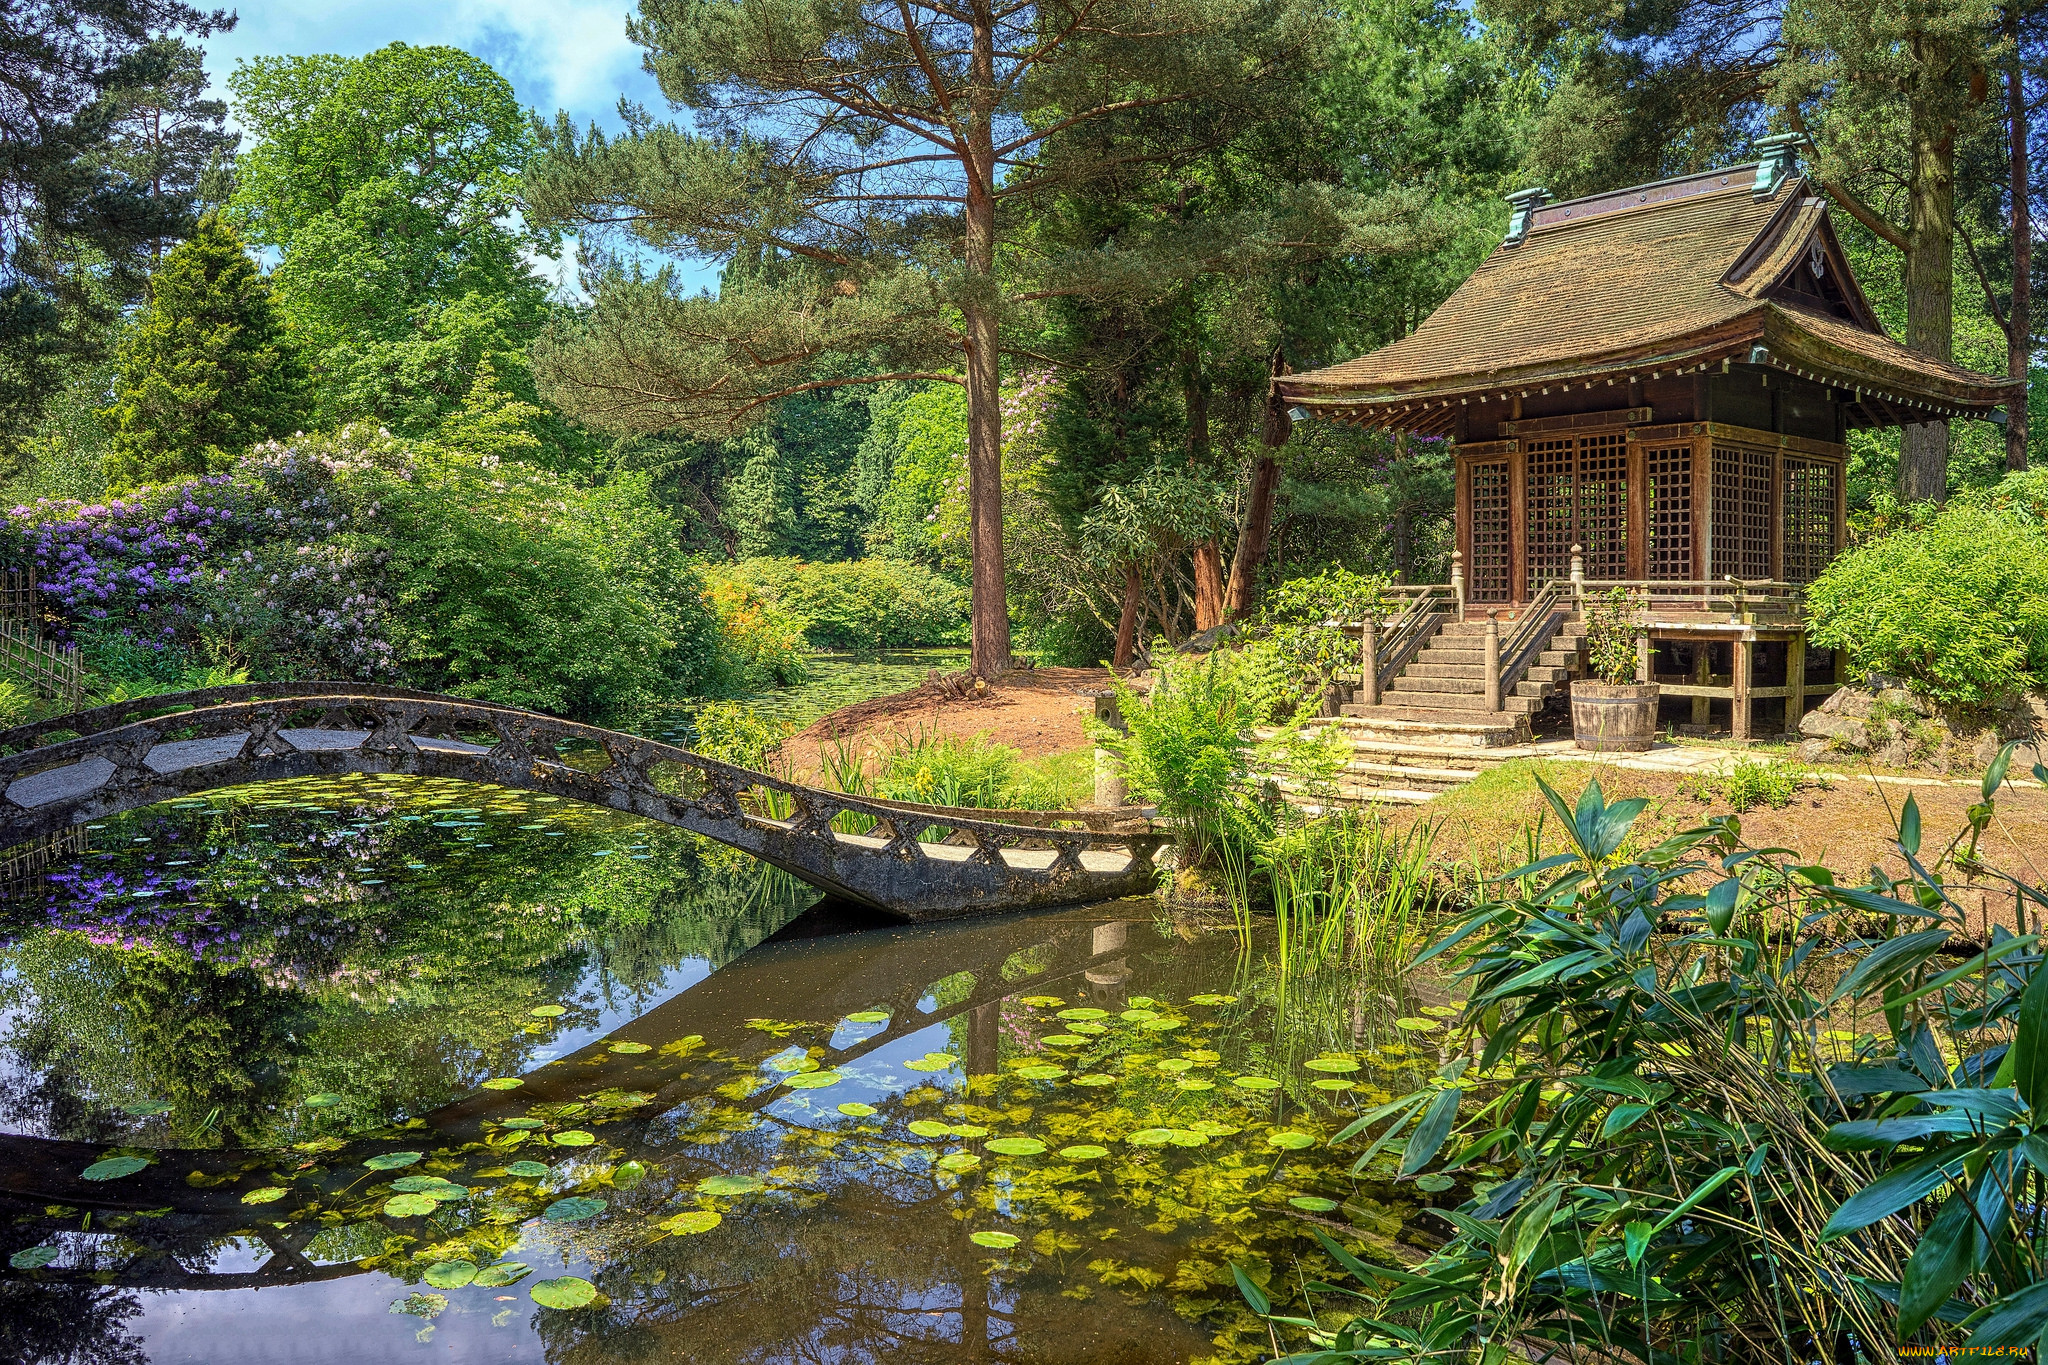 Забронировать столик в японском саду. Японская усадьба с прудиком. Япония сады пруд мост. Японский прудик в саду. Беседка в Японии с прудиком.